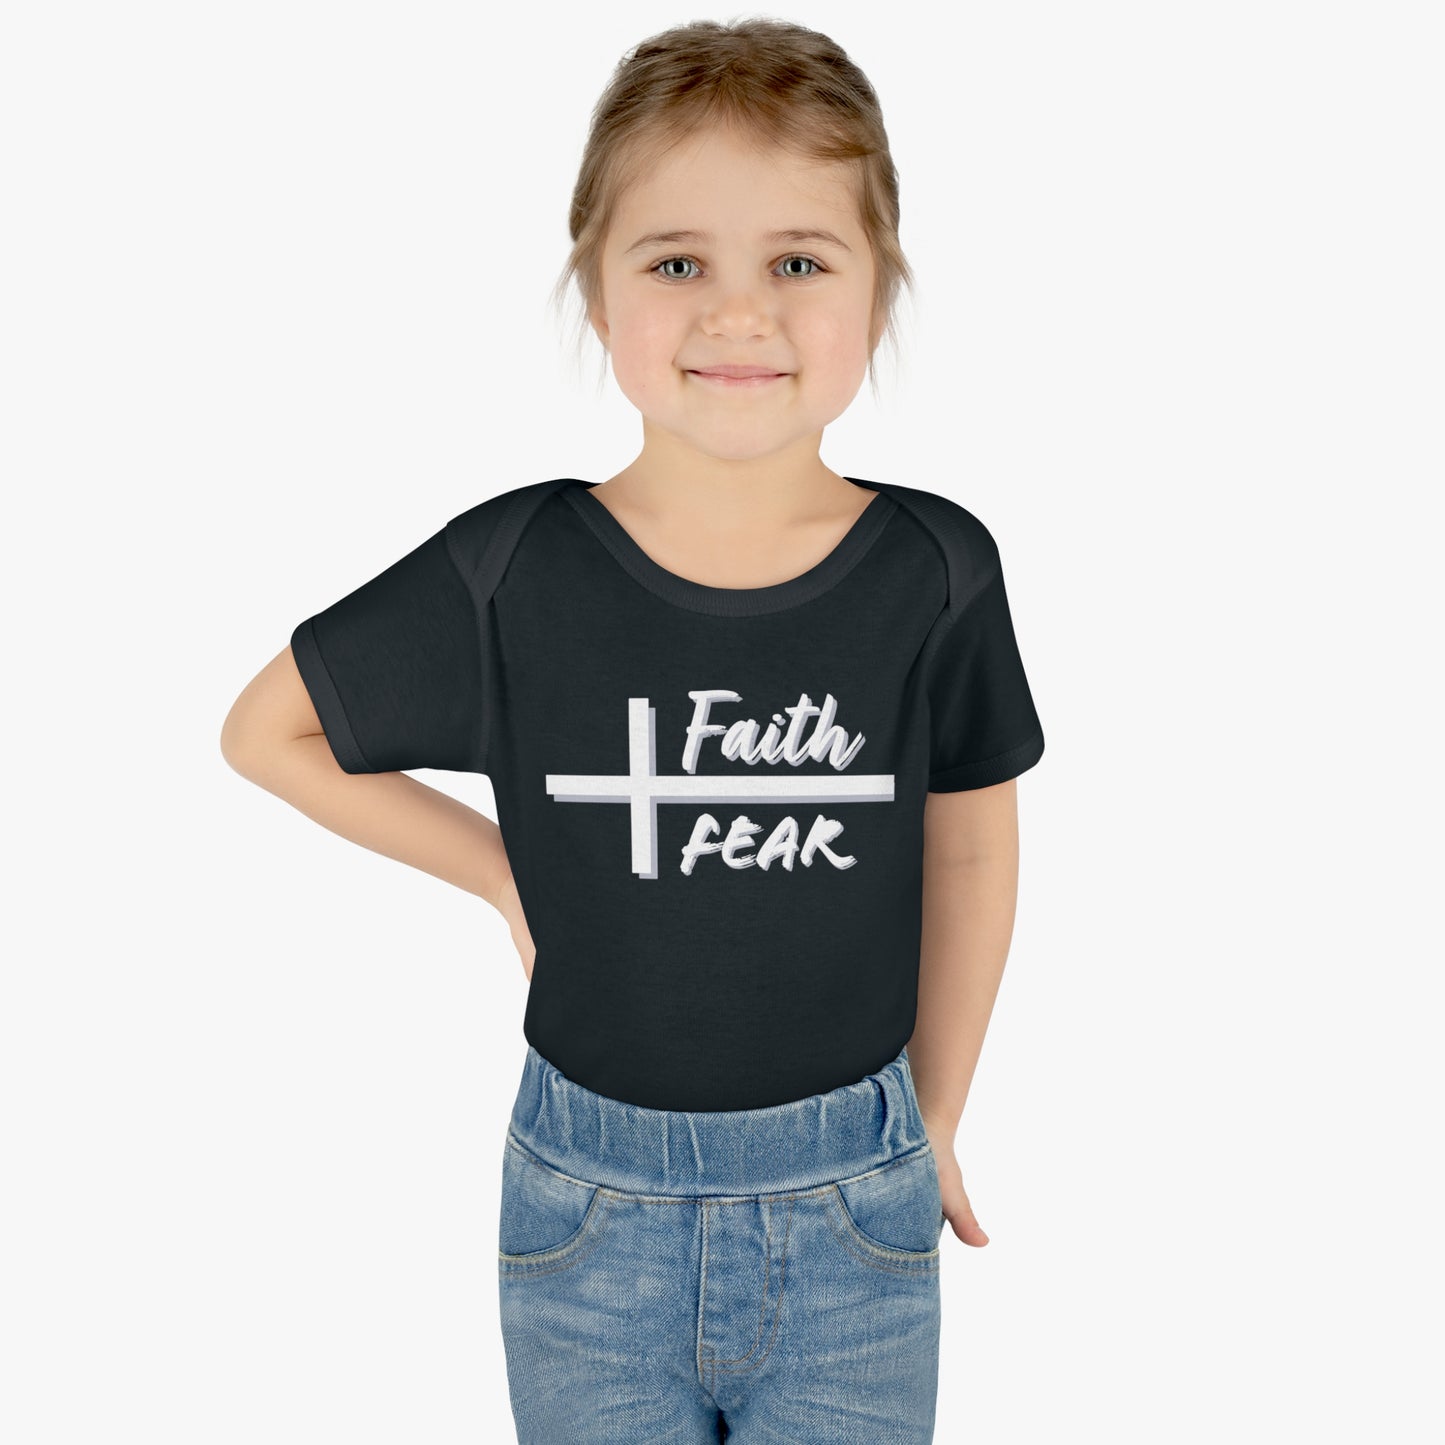 Infant Baby Rib Bodysuit, Faith Over Fear Onesie, Christian Onesie, Baby Christian